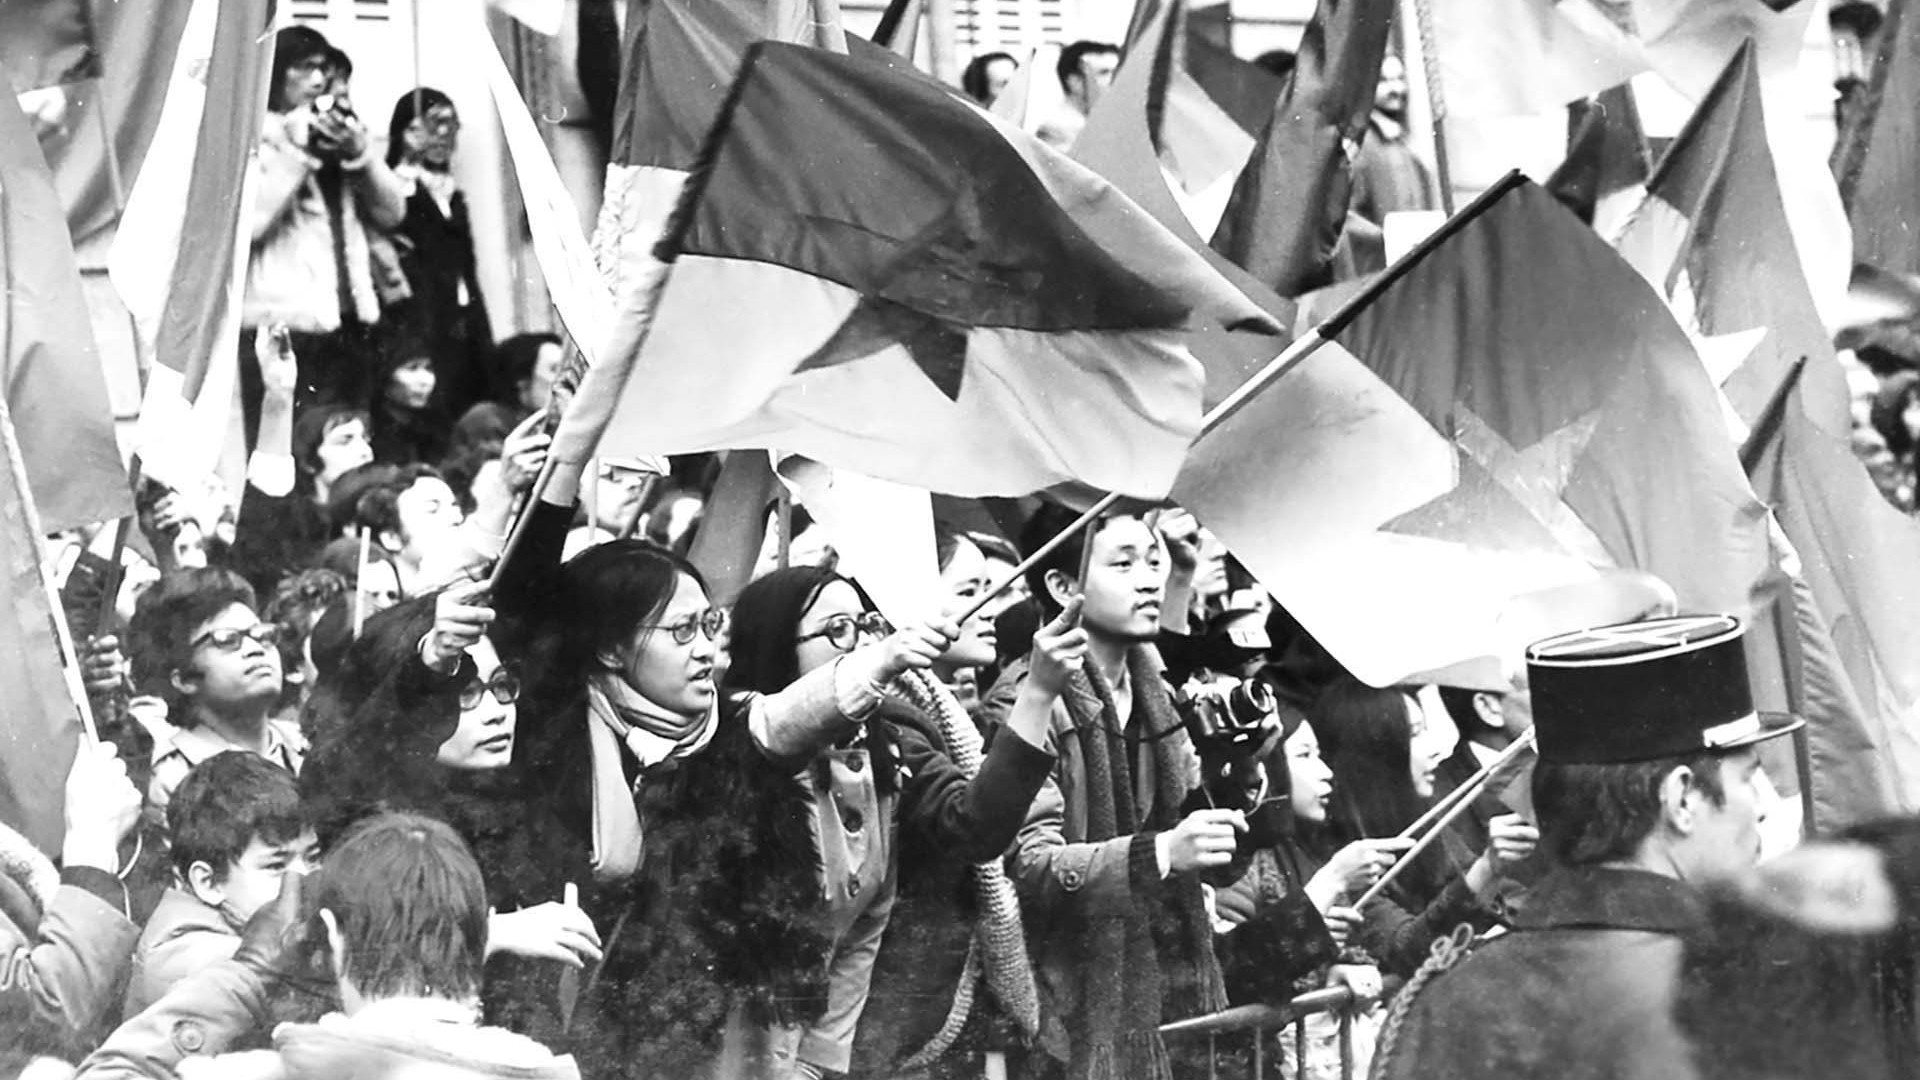 Kỷ niệm 50 năm Ngày ký kết Hiệp định Paris: ‘Việt cộng’ đến Paris